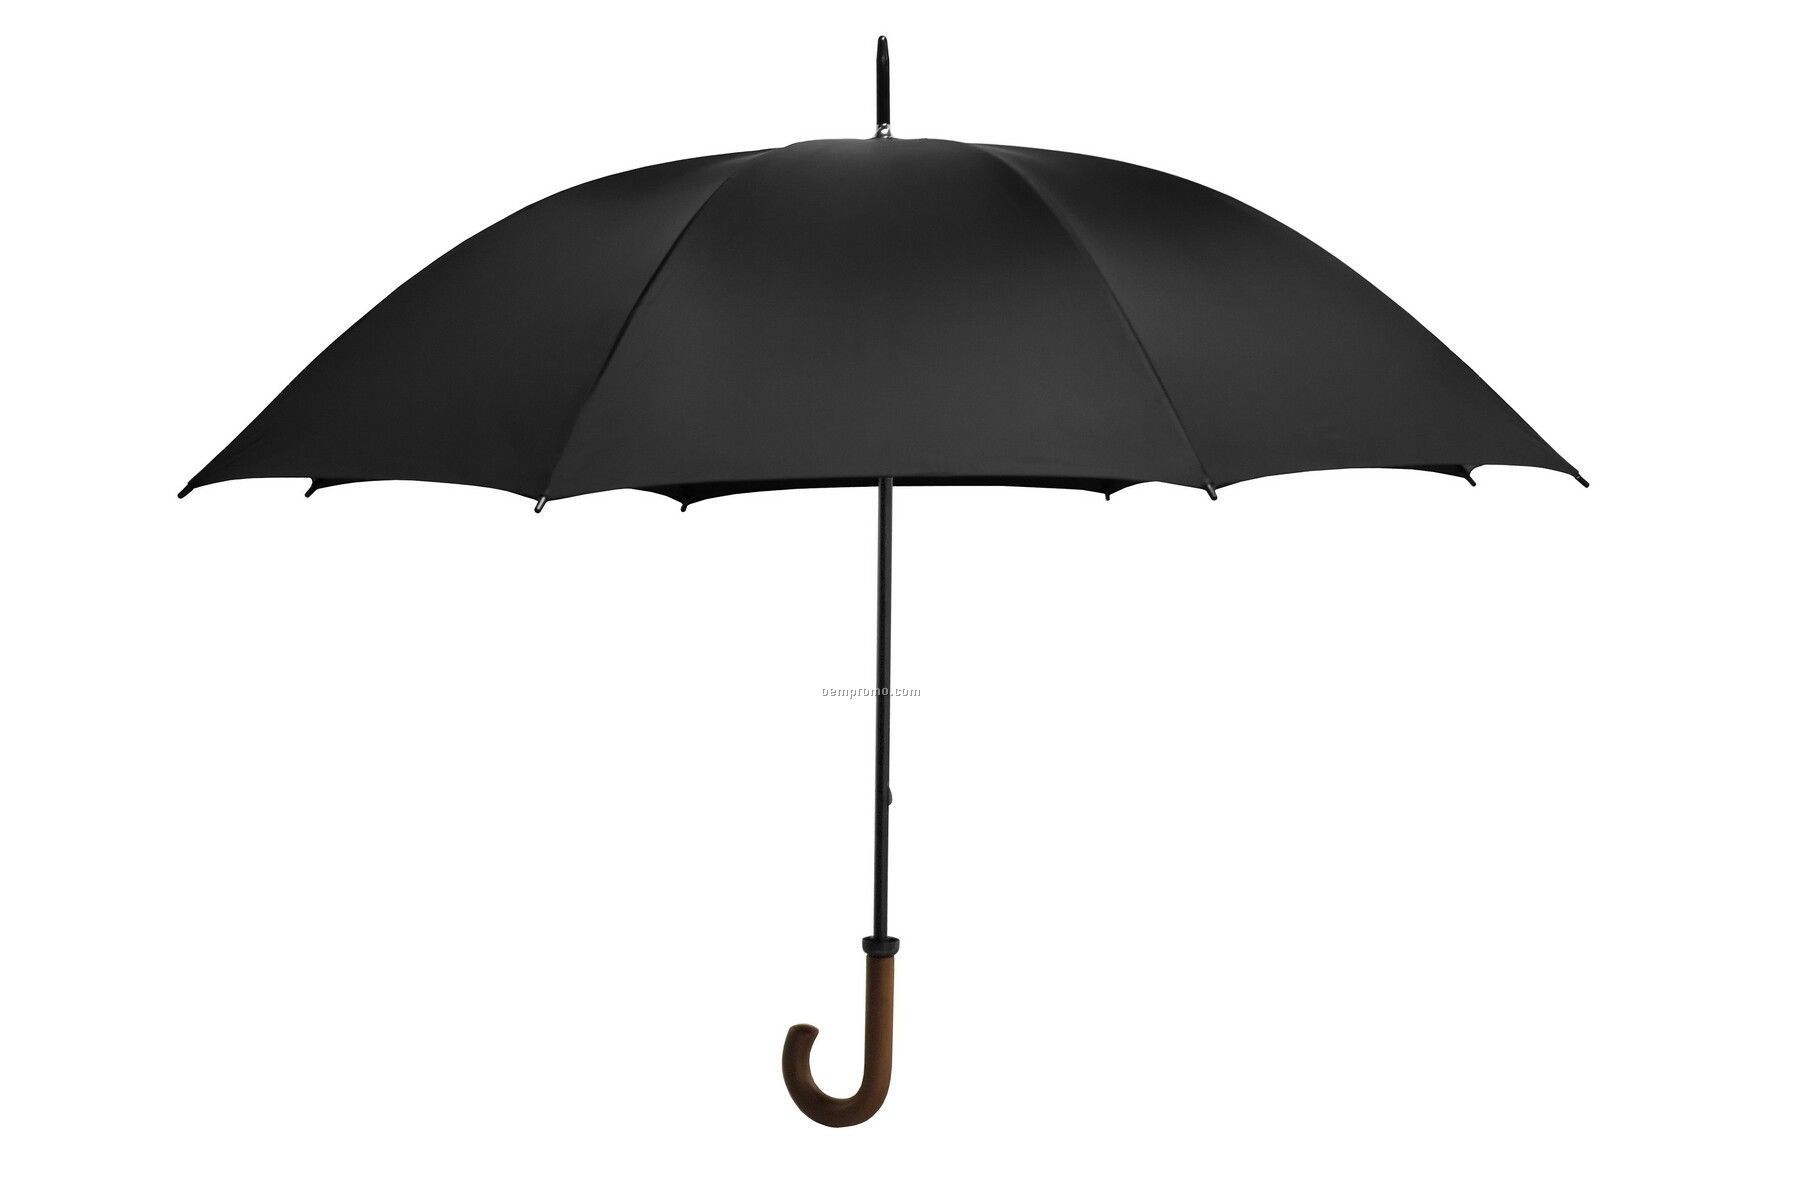 The Doorman Umbrella